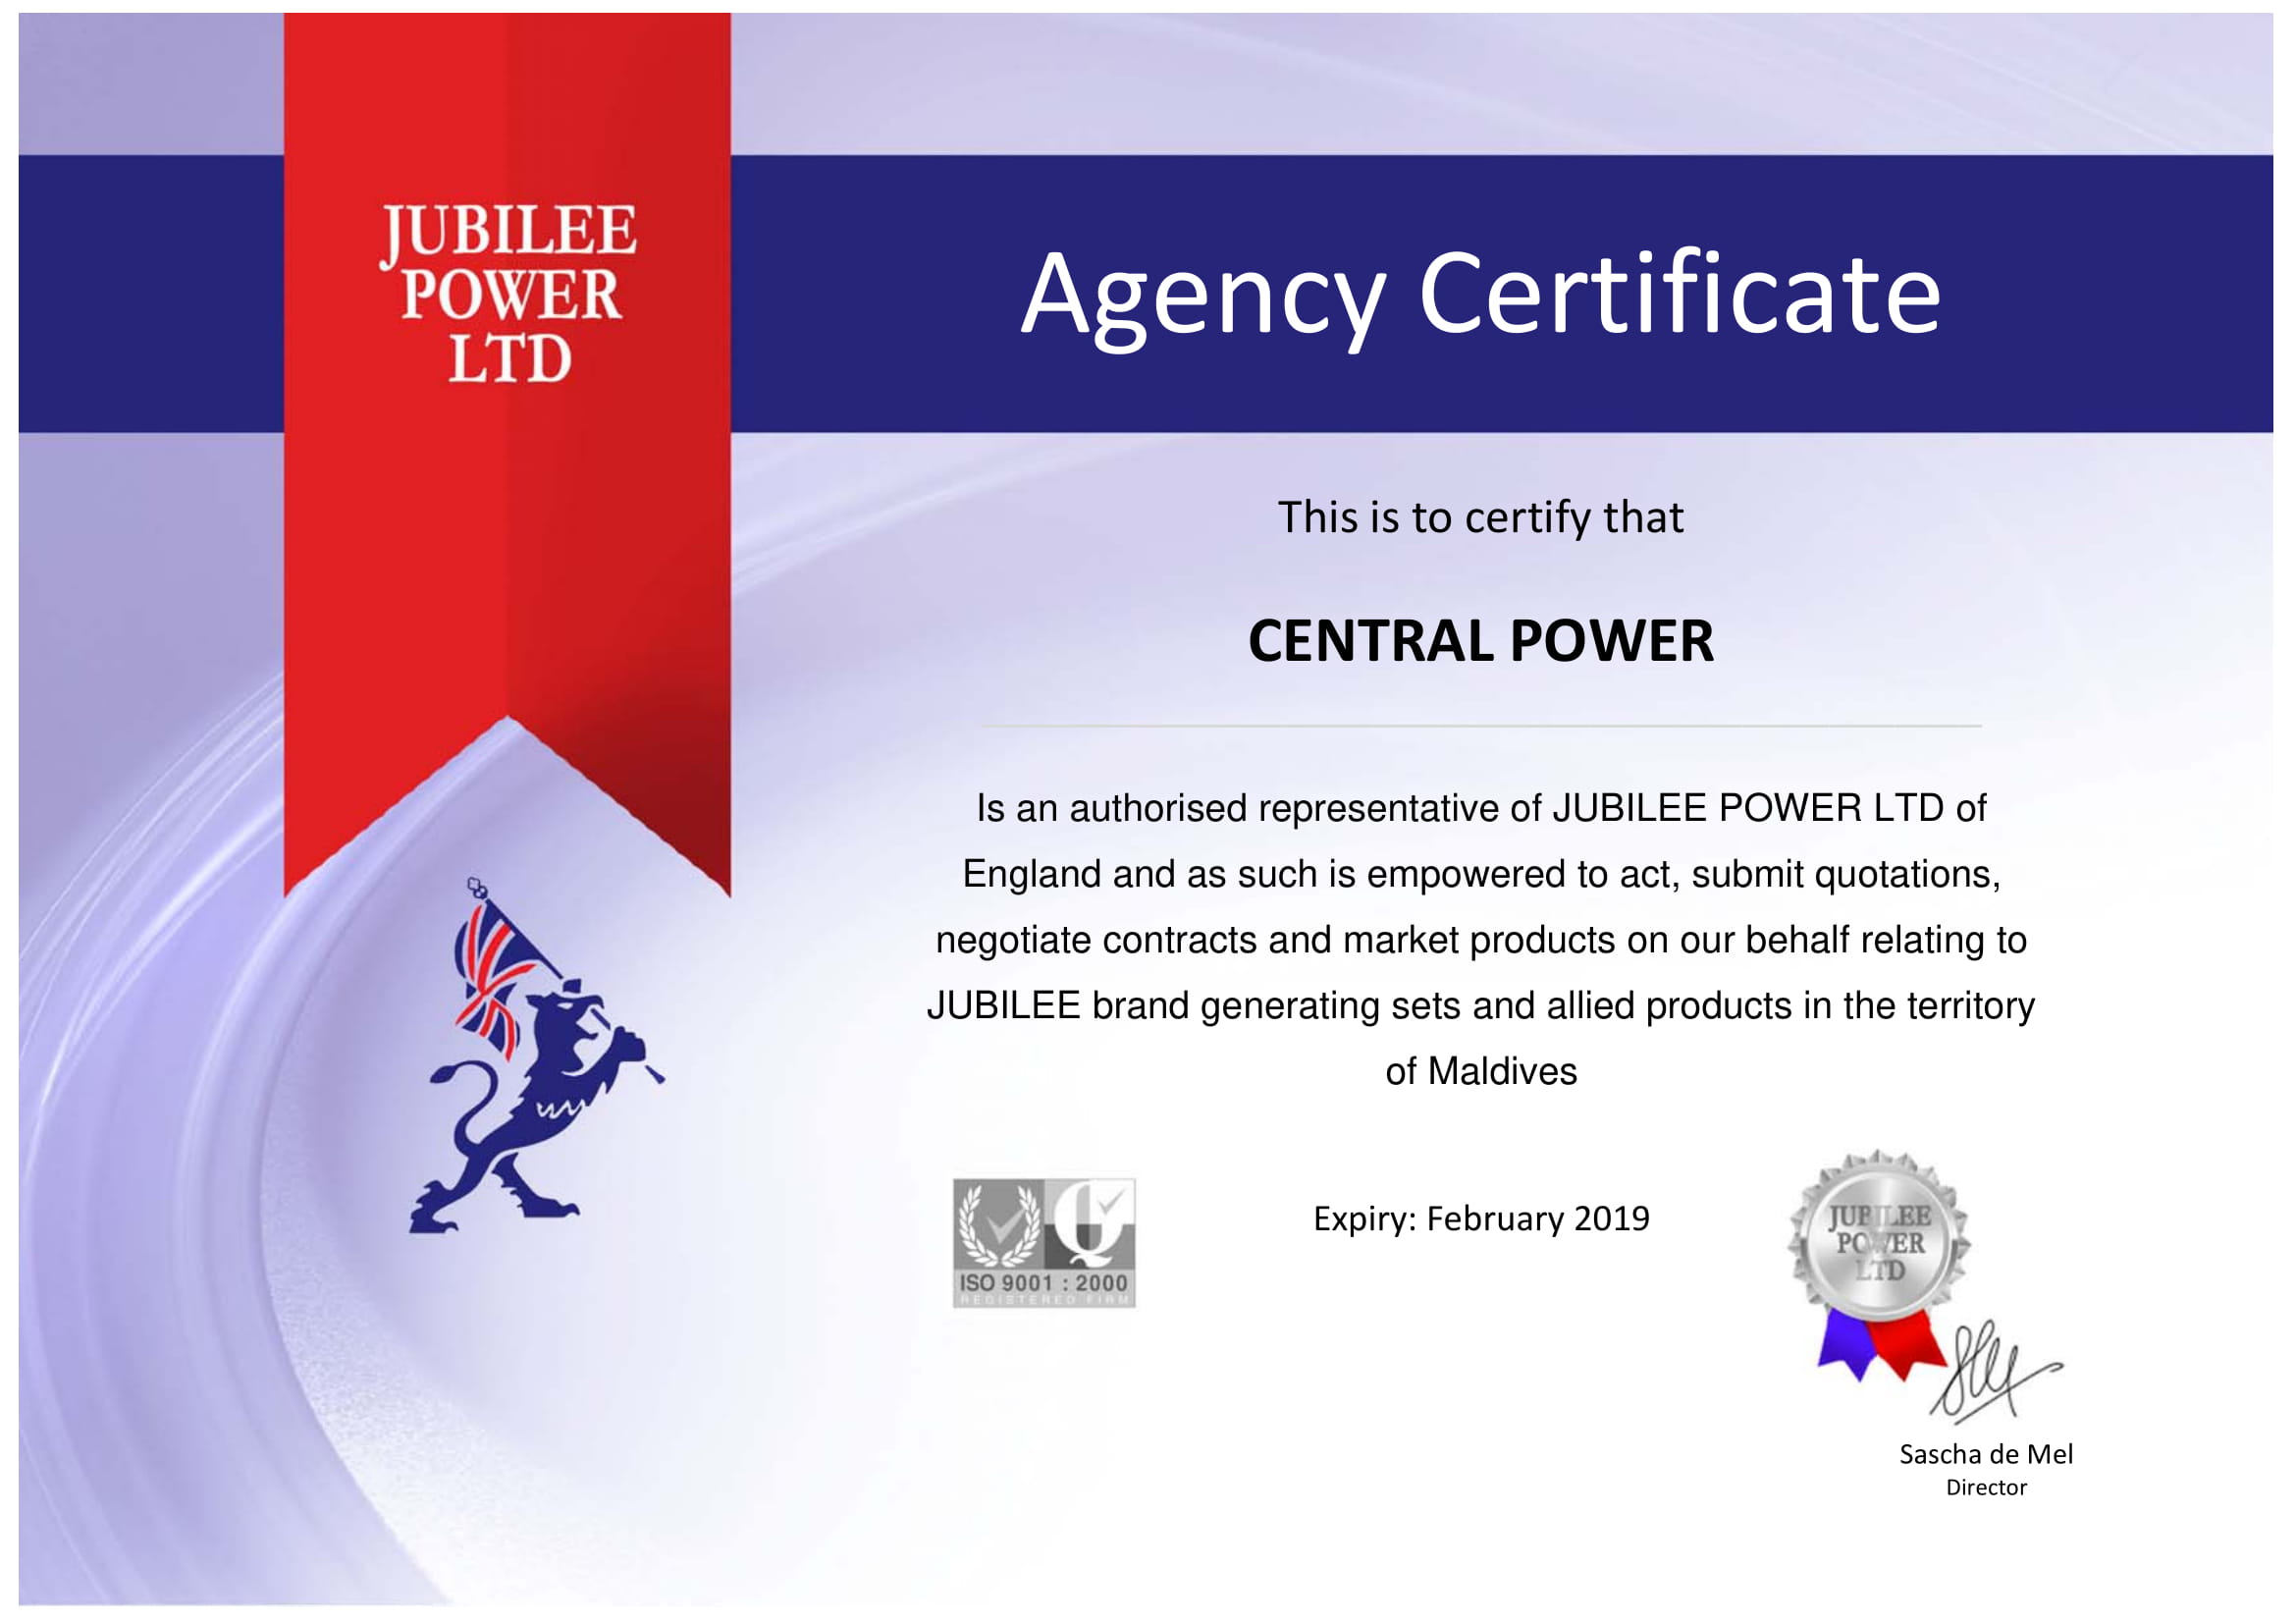 Jubilee-Agency Certificate-2018-1